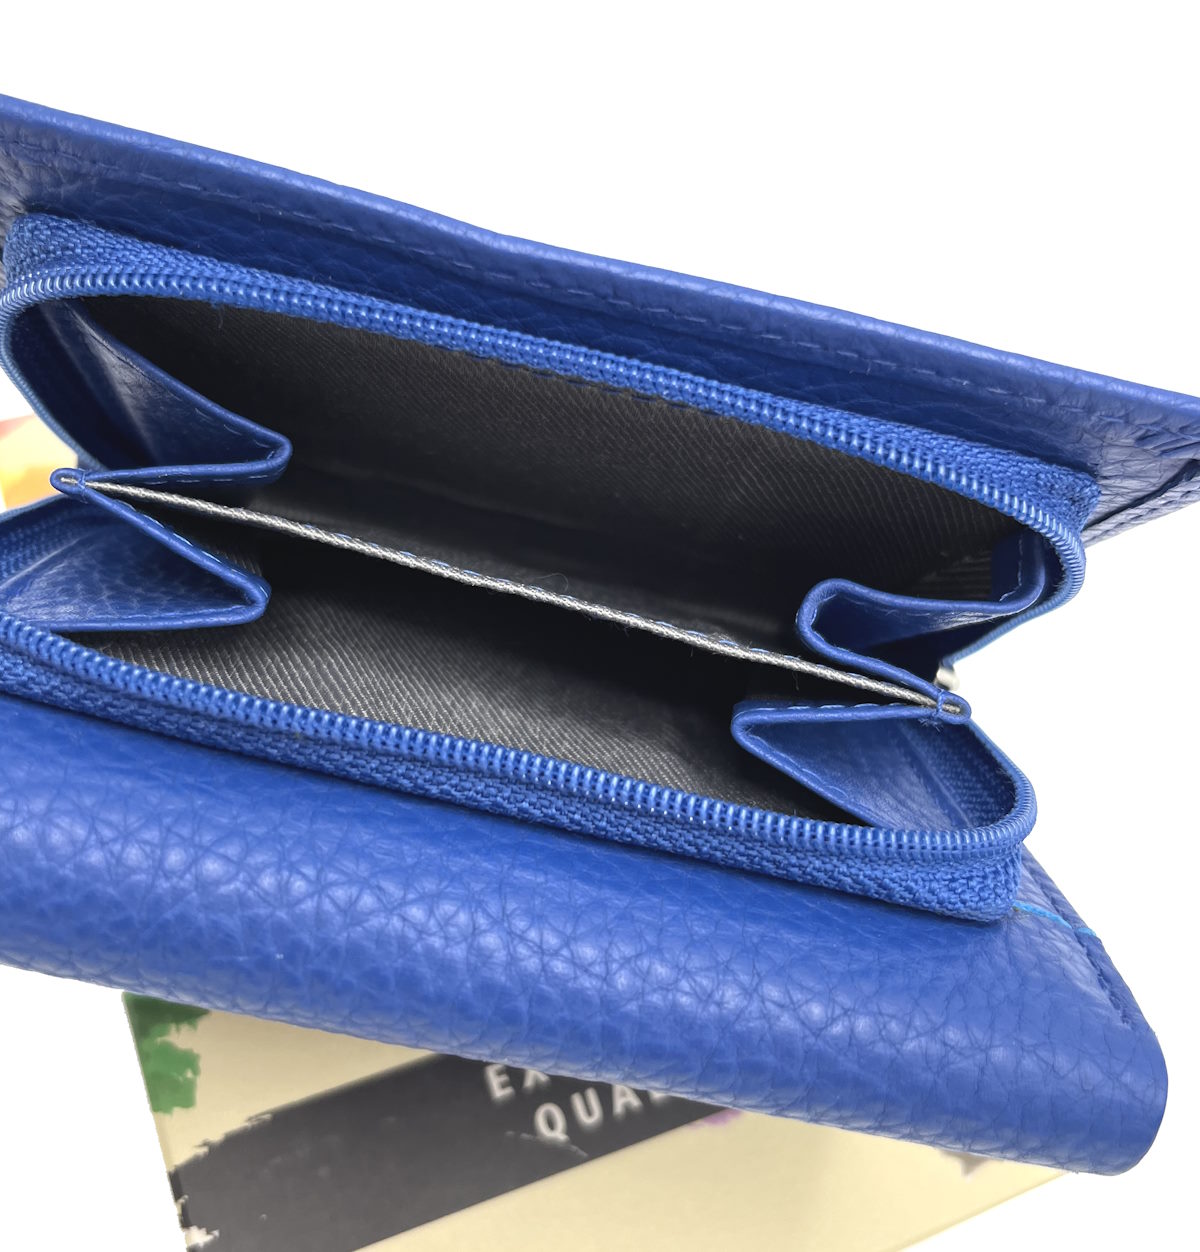 Genuine leather wallet, for women, art. PFD908.392